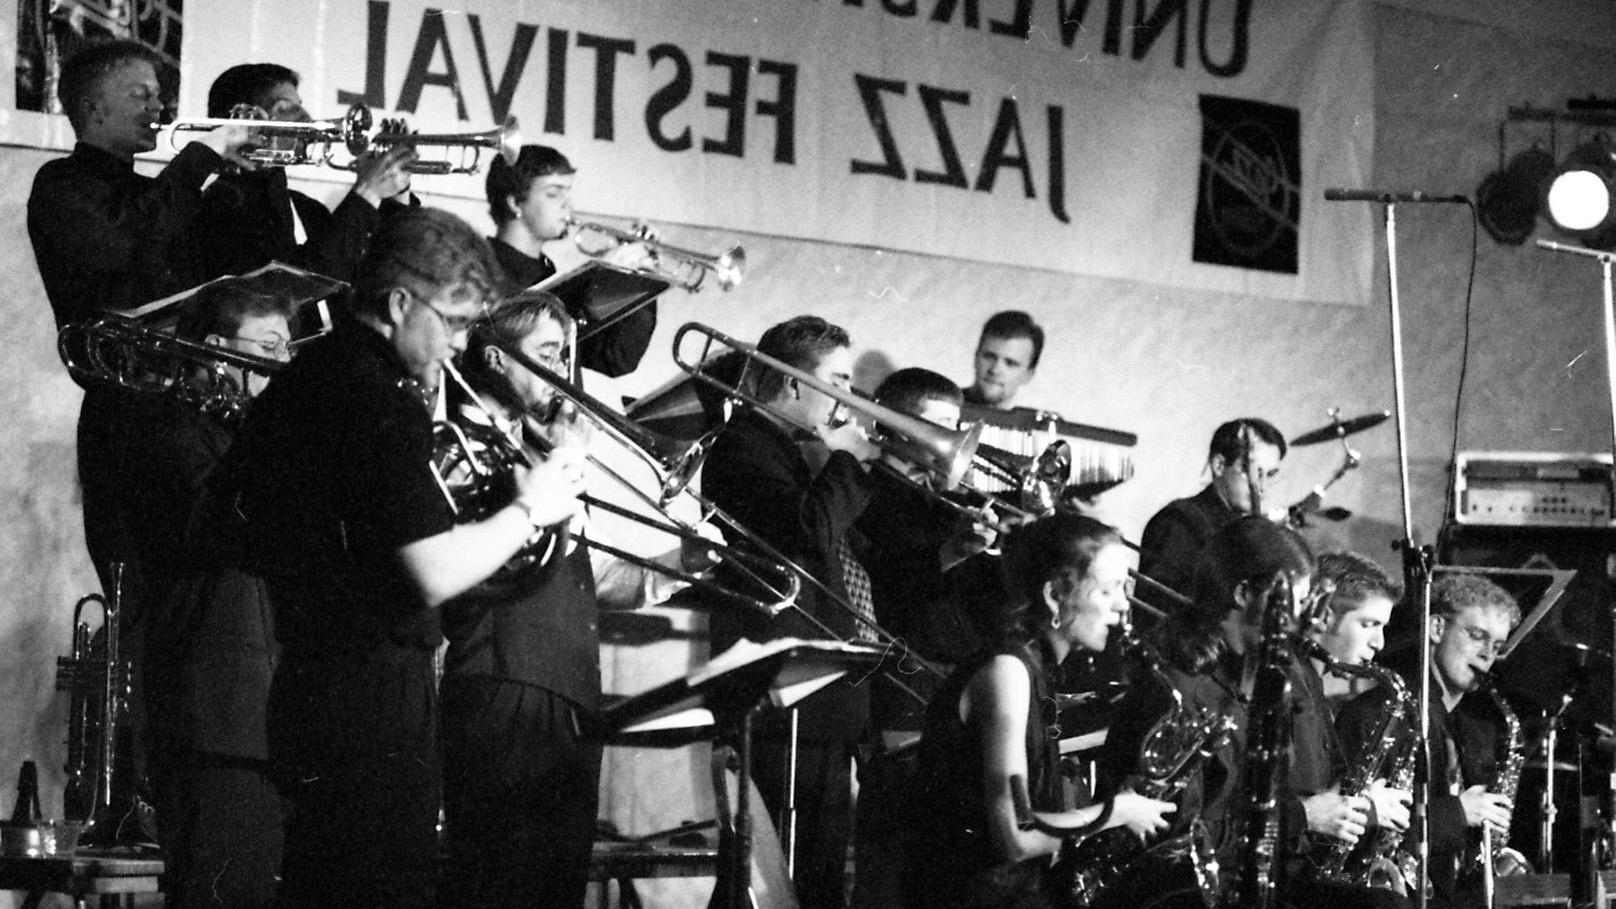 Jazz Festival Band